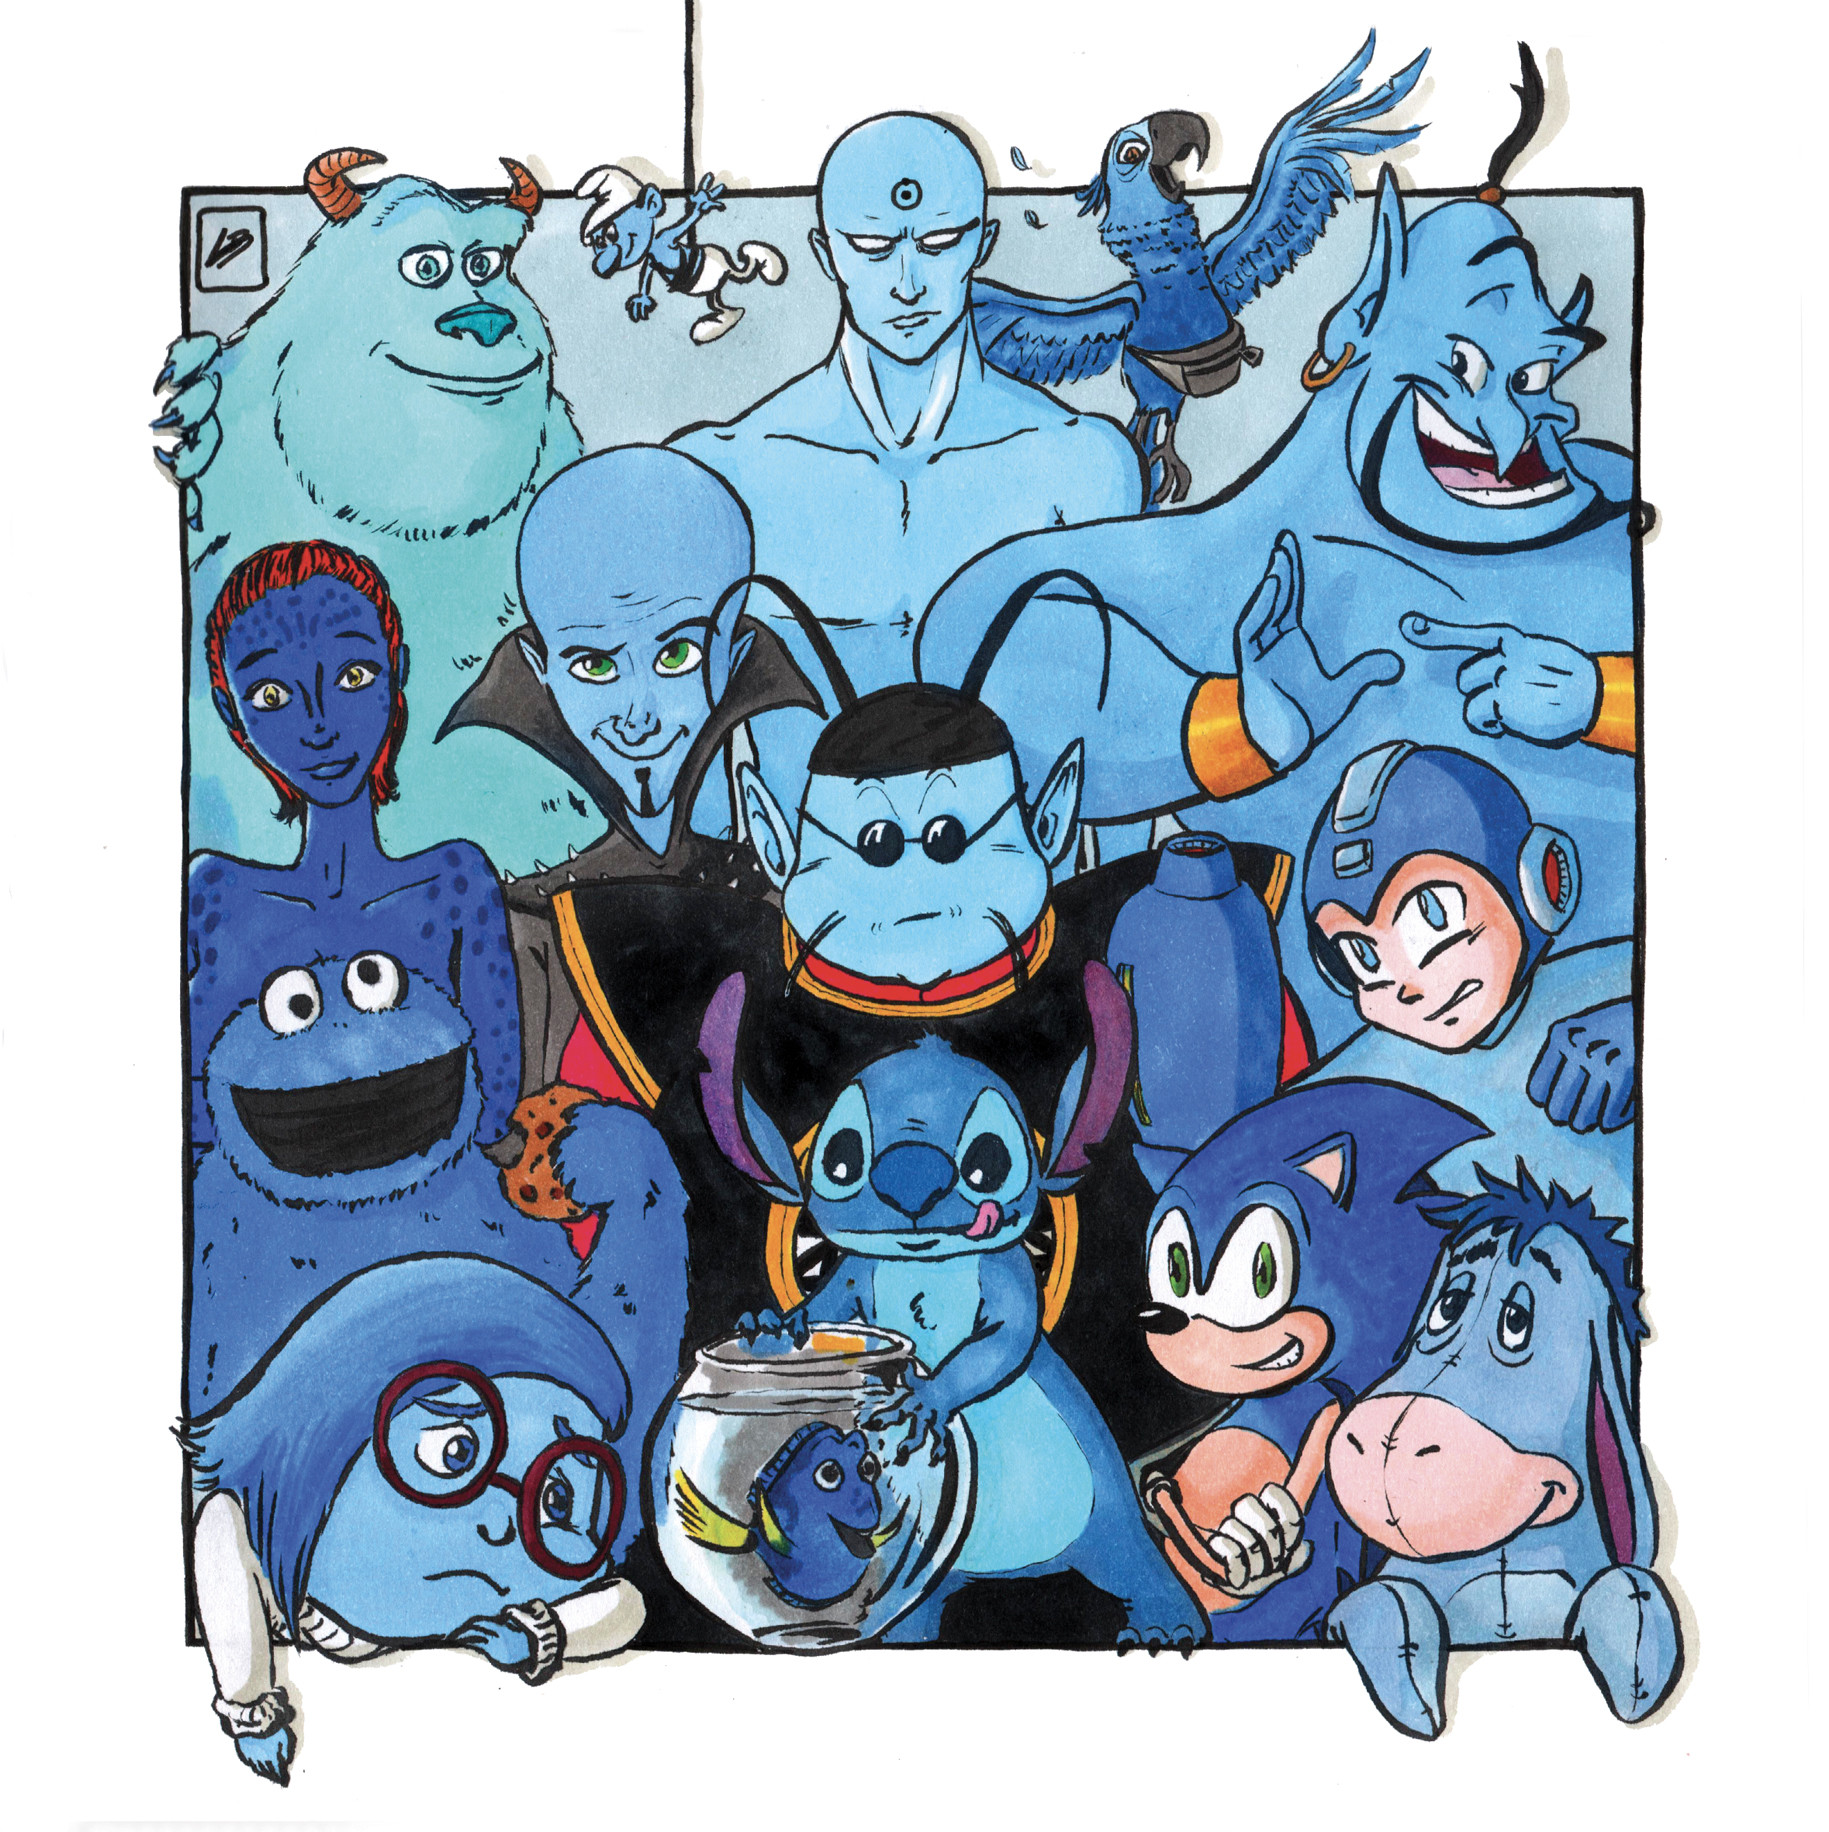 cartoons agrupadas por color azul